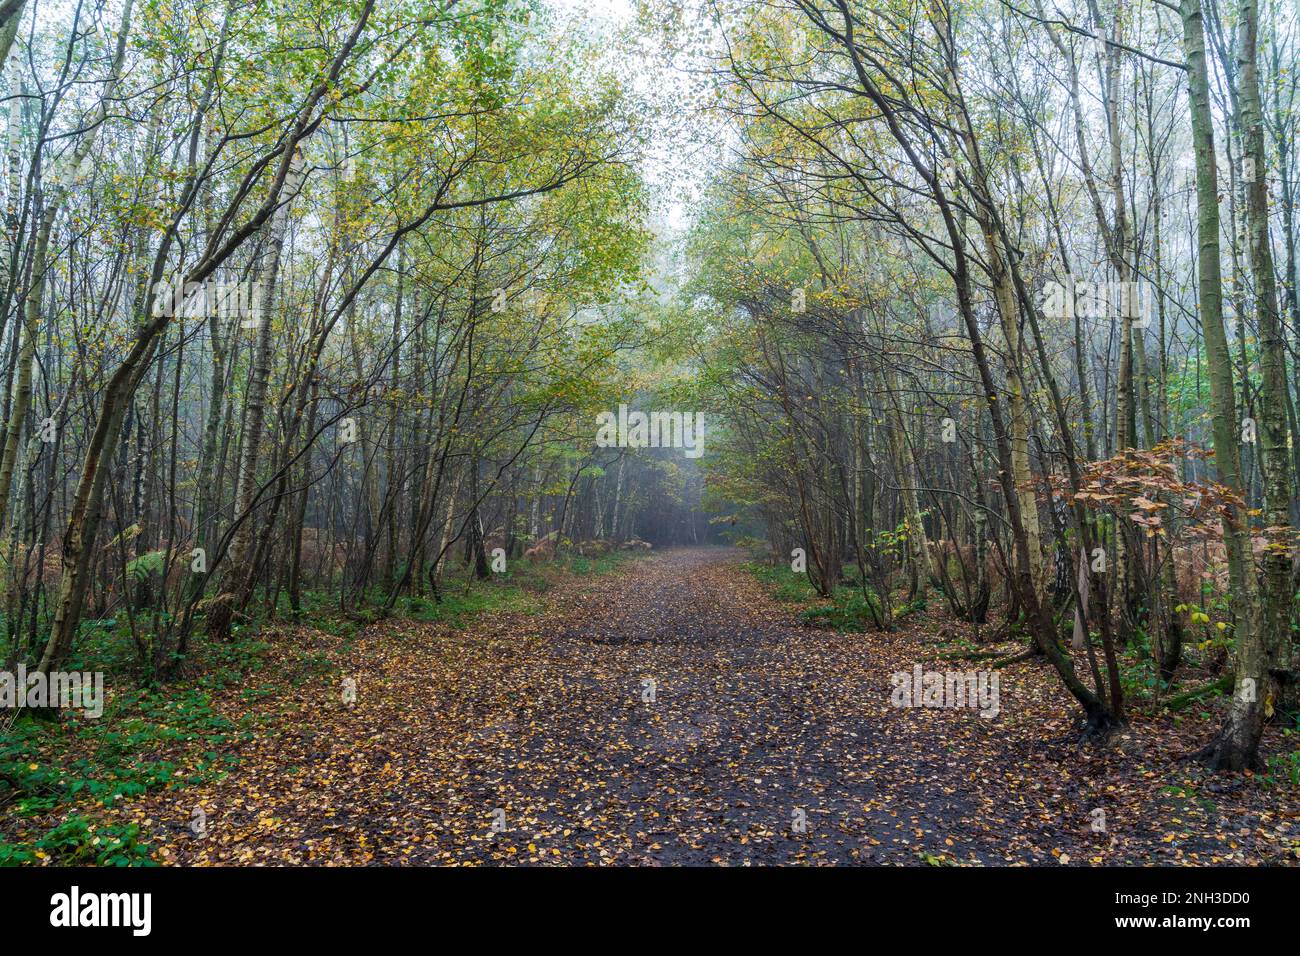 Breite Spur führt durch gemischte Wälder in Clowes Wood, Kent, England. Birken säumen den Pfad teilweise mit heruntergefallenen Blättern. Kalte Atmosphäre. Stockfoto